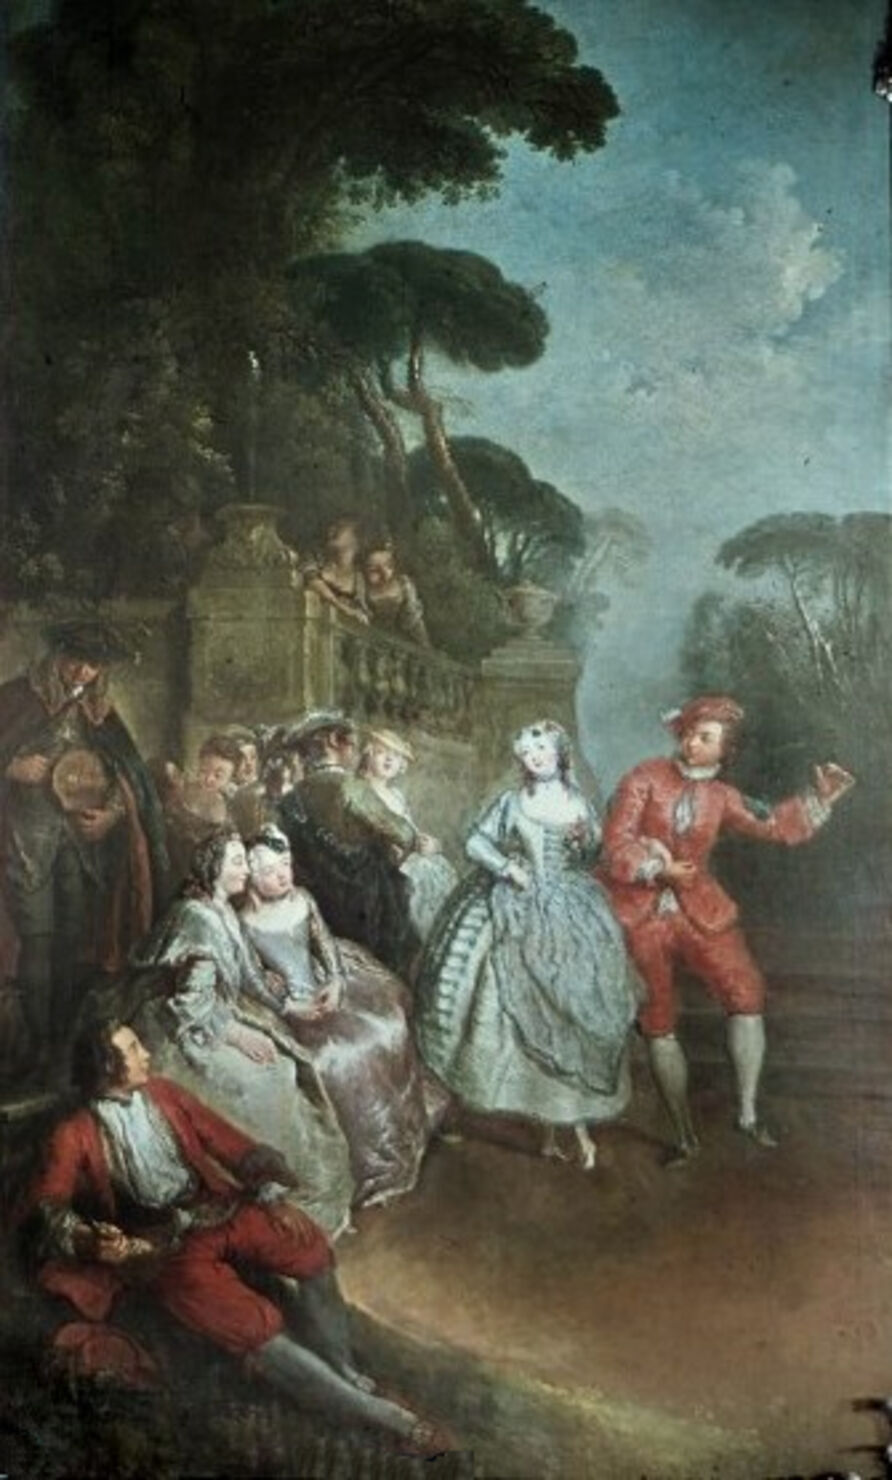 Antoine Pesne: Tanzendes Paar mit Zuschauern im Park, 1745. Öl auf Leinwand, 260 x 130 cm. SPSG, GK I 4190 (Kriegsverlust)